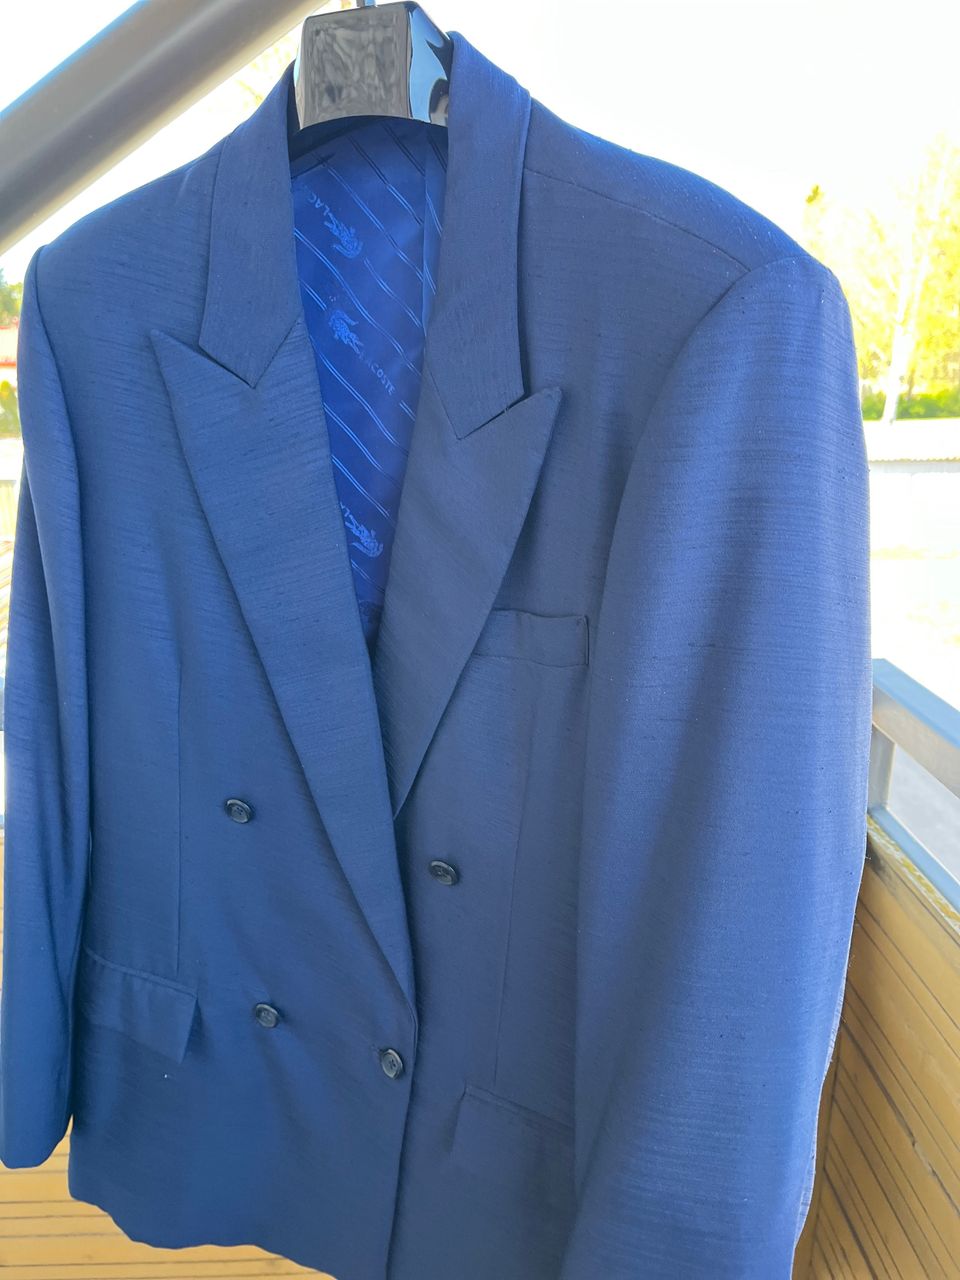 Silkkikankainen Upea Vintage puku . Tyylikkäälle miehellf edim kesähäihin